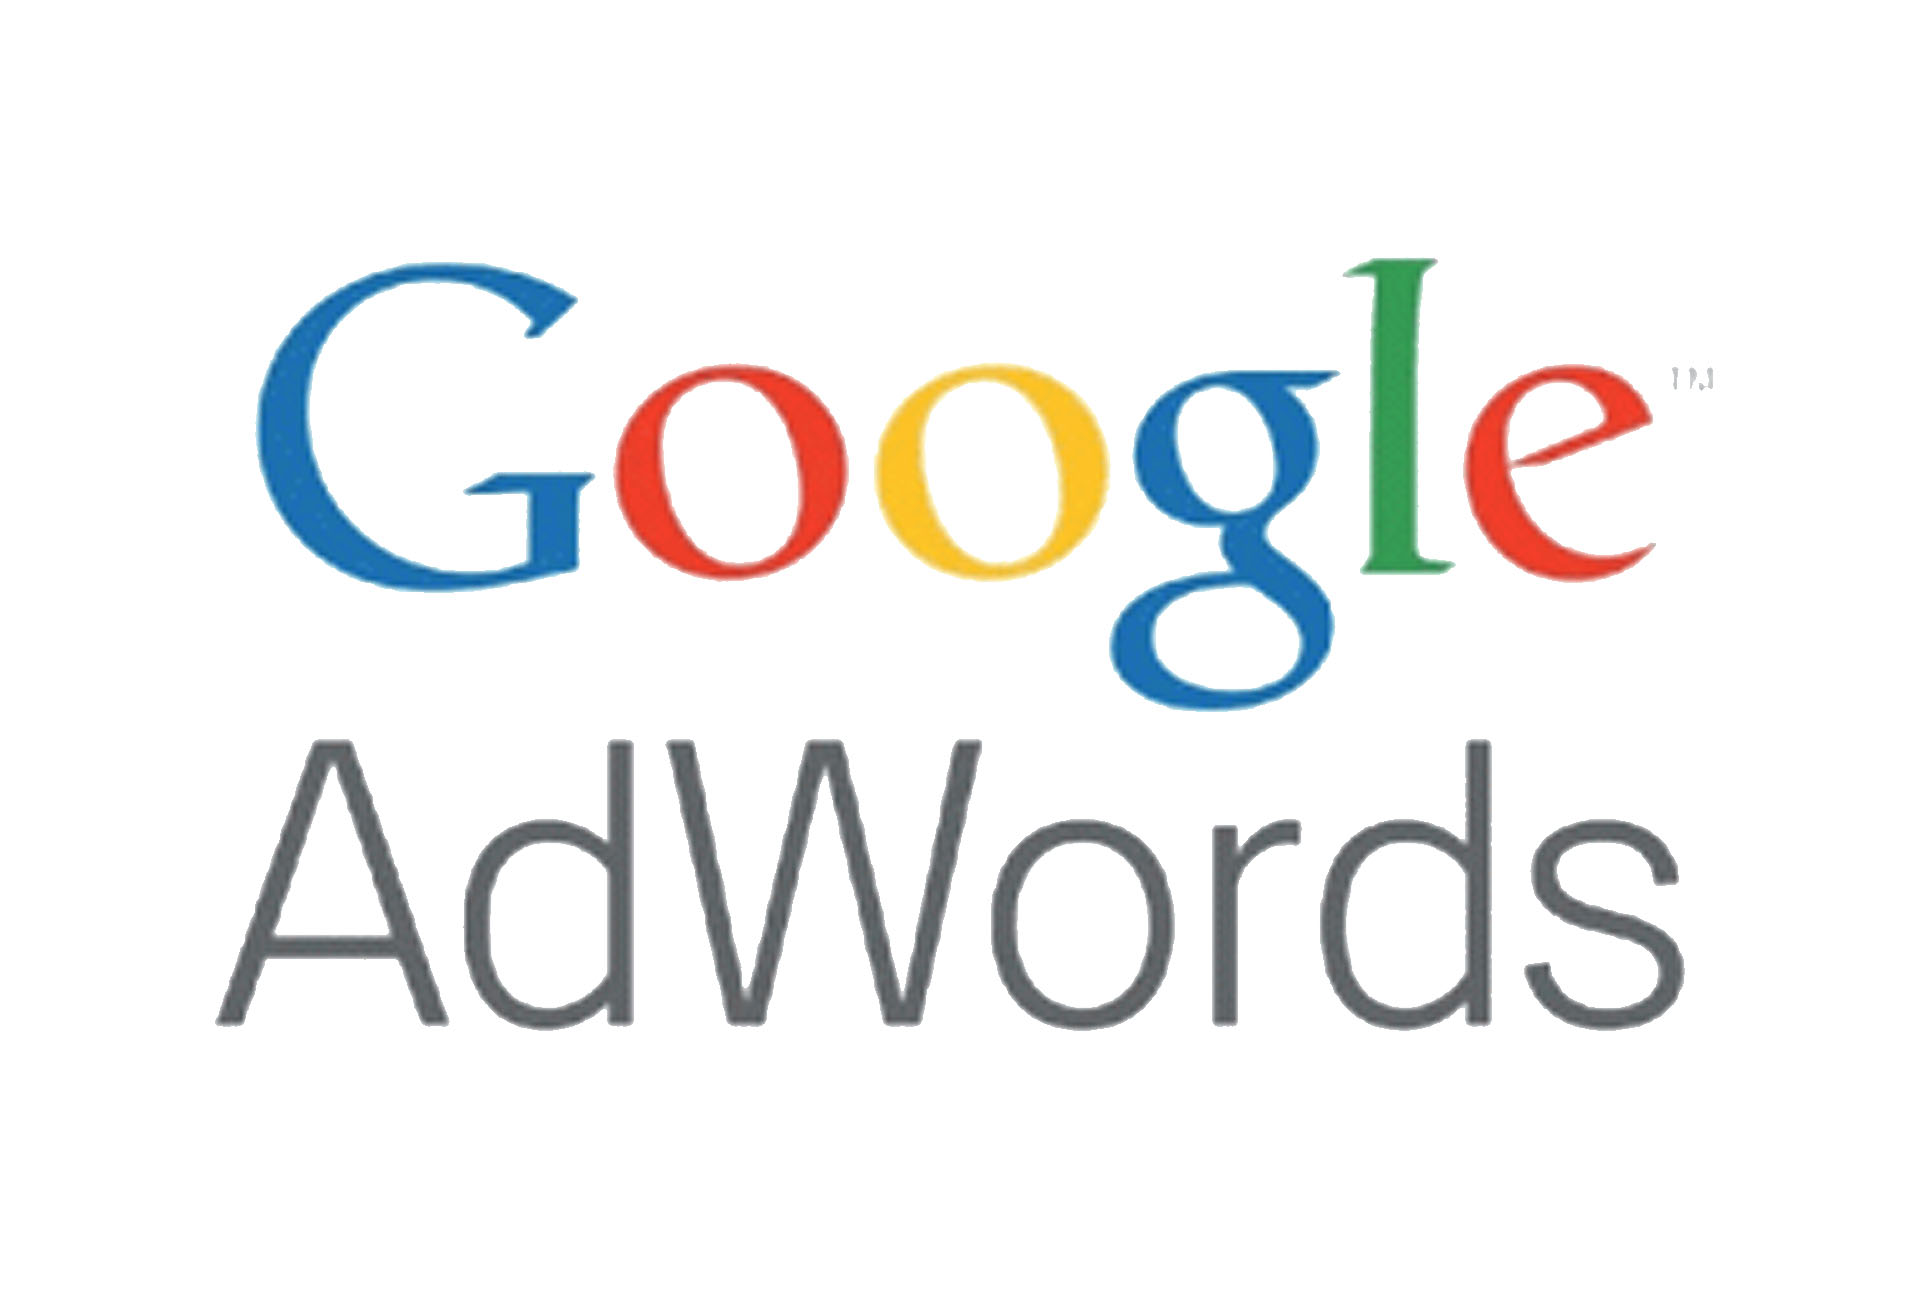 Google-adwords links patrocinados